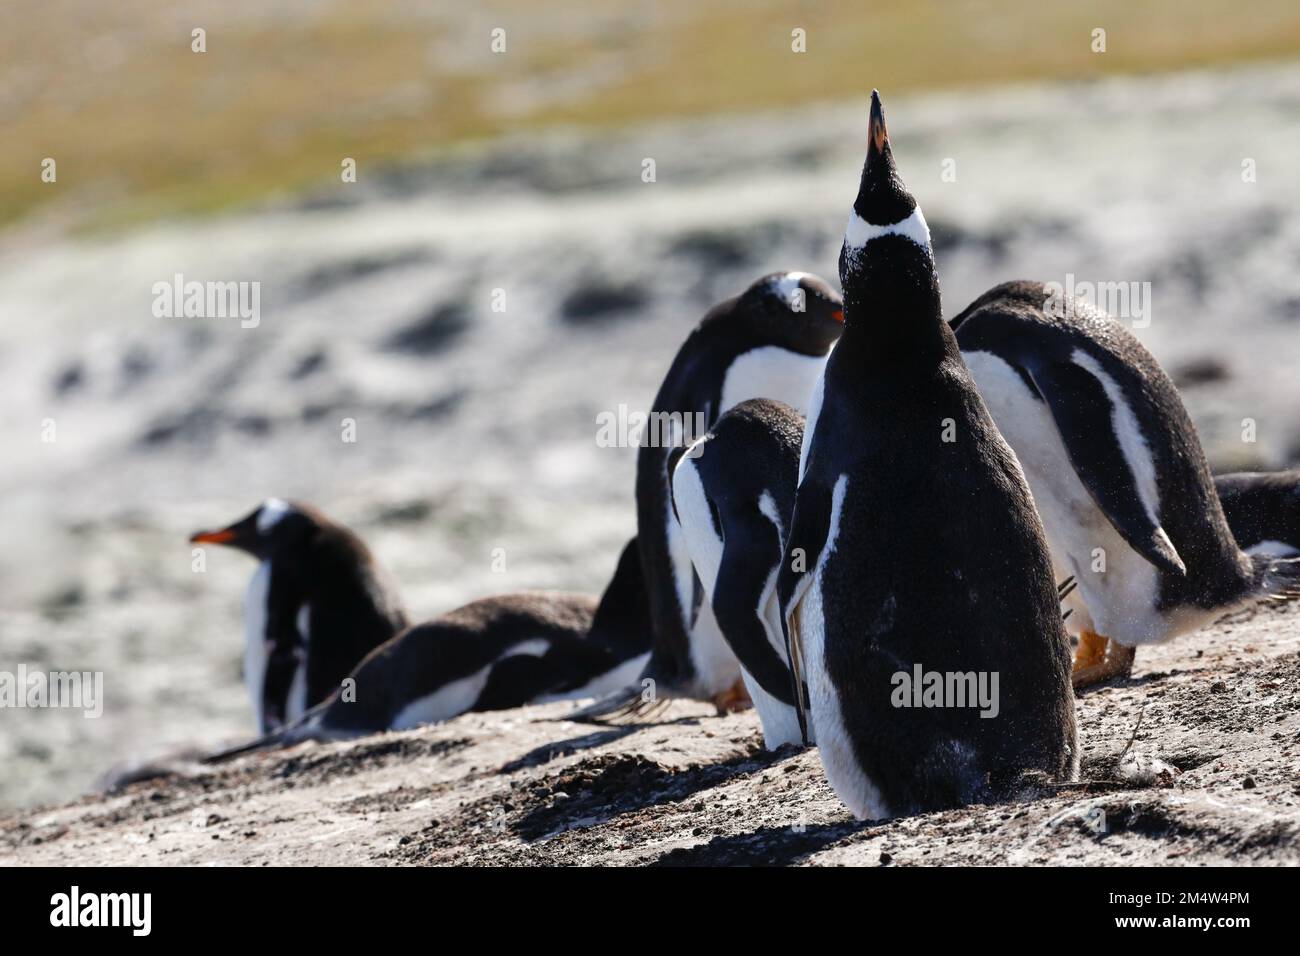 Pinguino Gentoo che produce una chiamata di accoppiamento nella speranza di attrarre un compagno. Falklands. Foto Stock